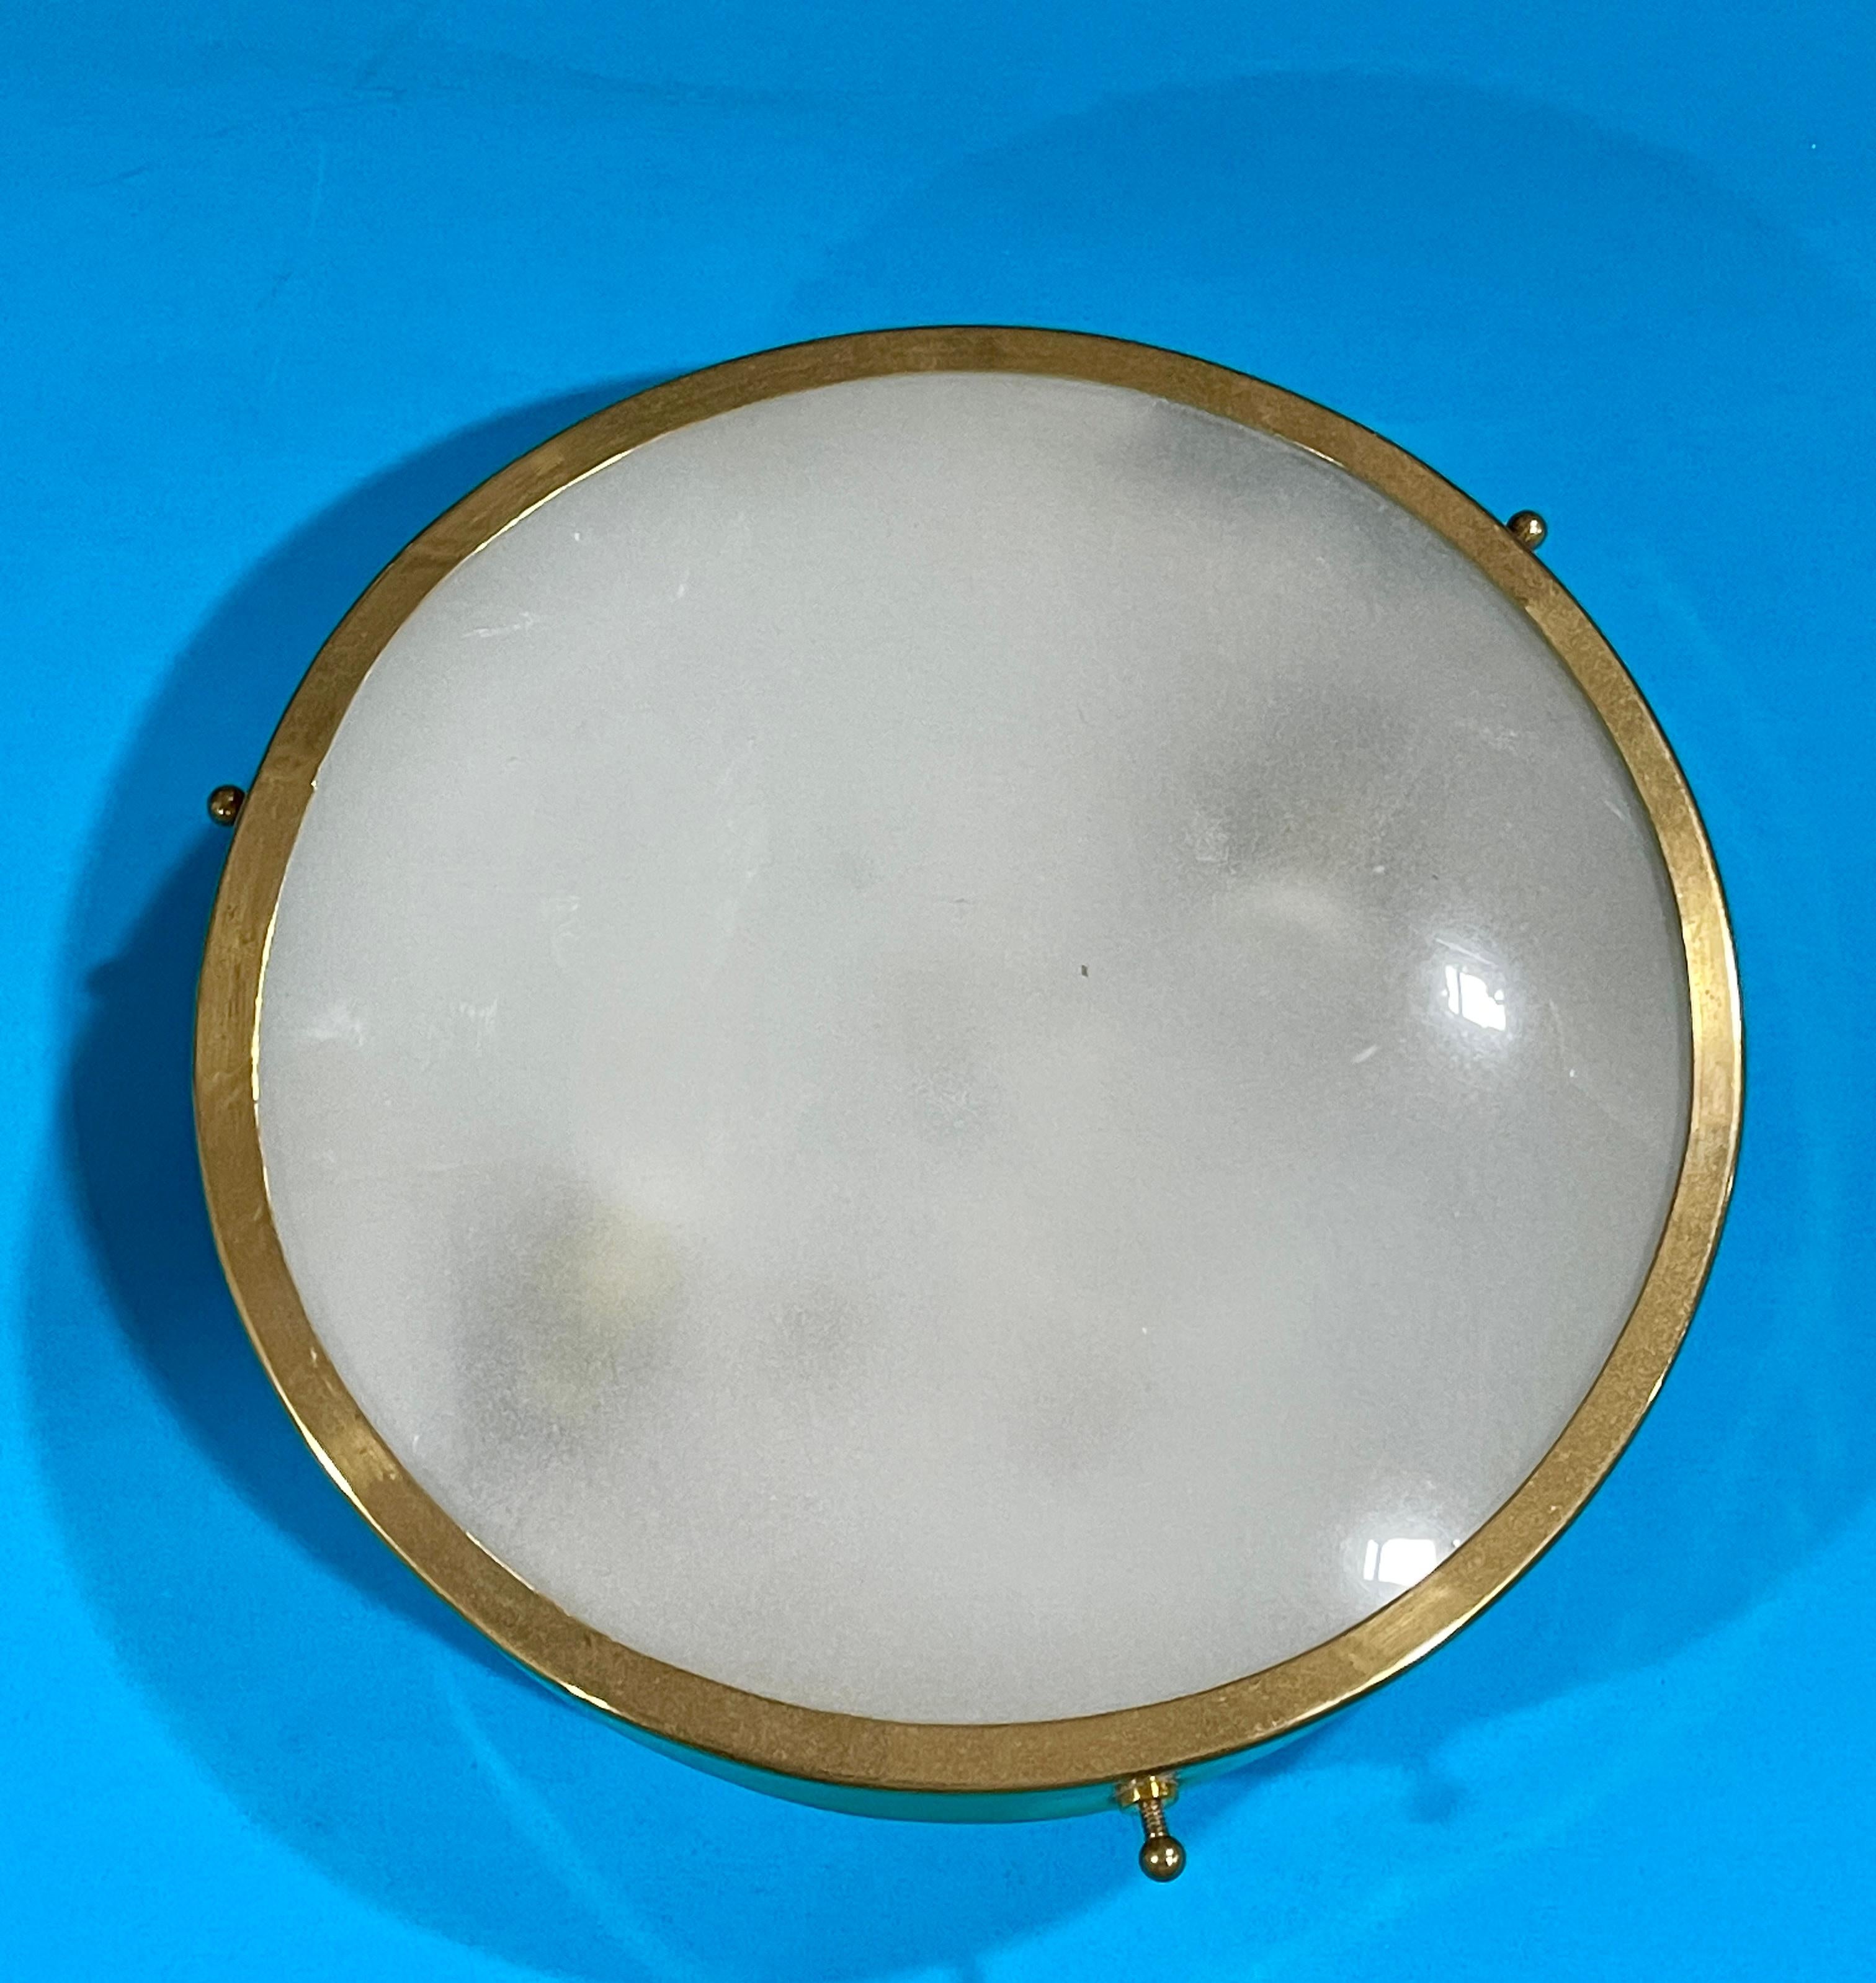 Mini-applique murale ou encastrée ronde en laiton Greco Illuminazion avec verre convexe sablé à l'intérieur. Diamètre de 8